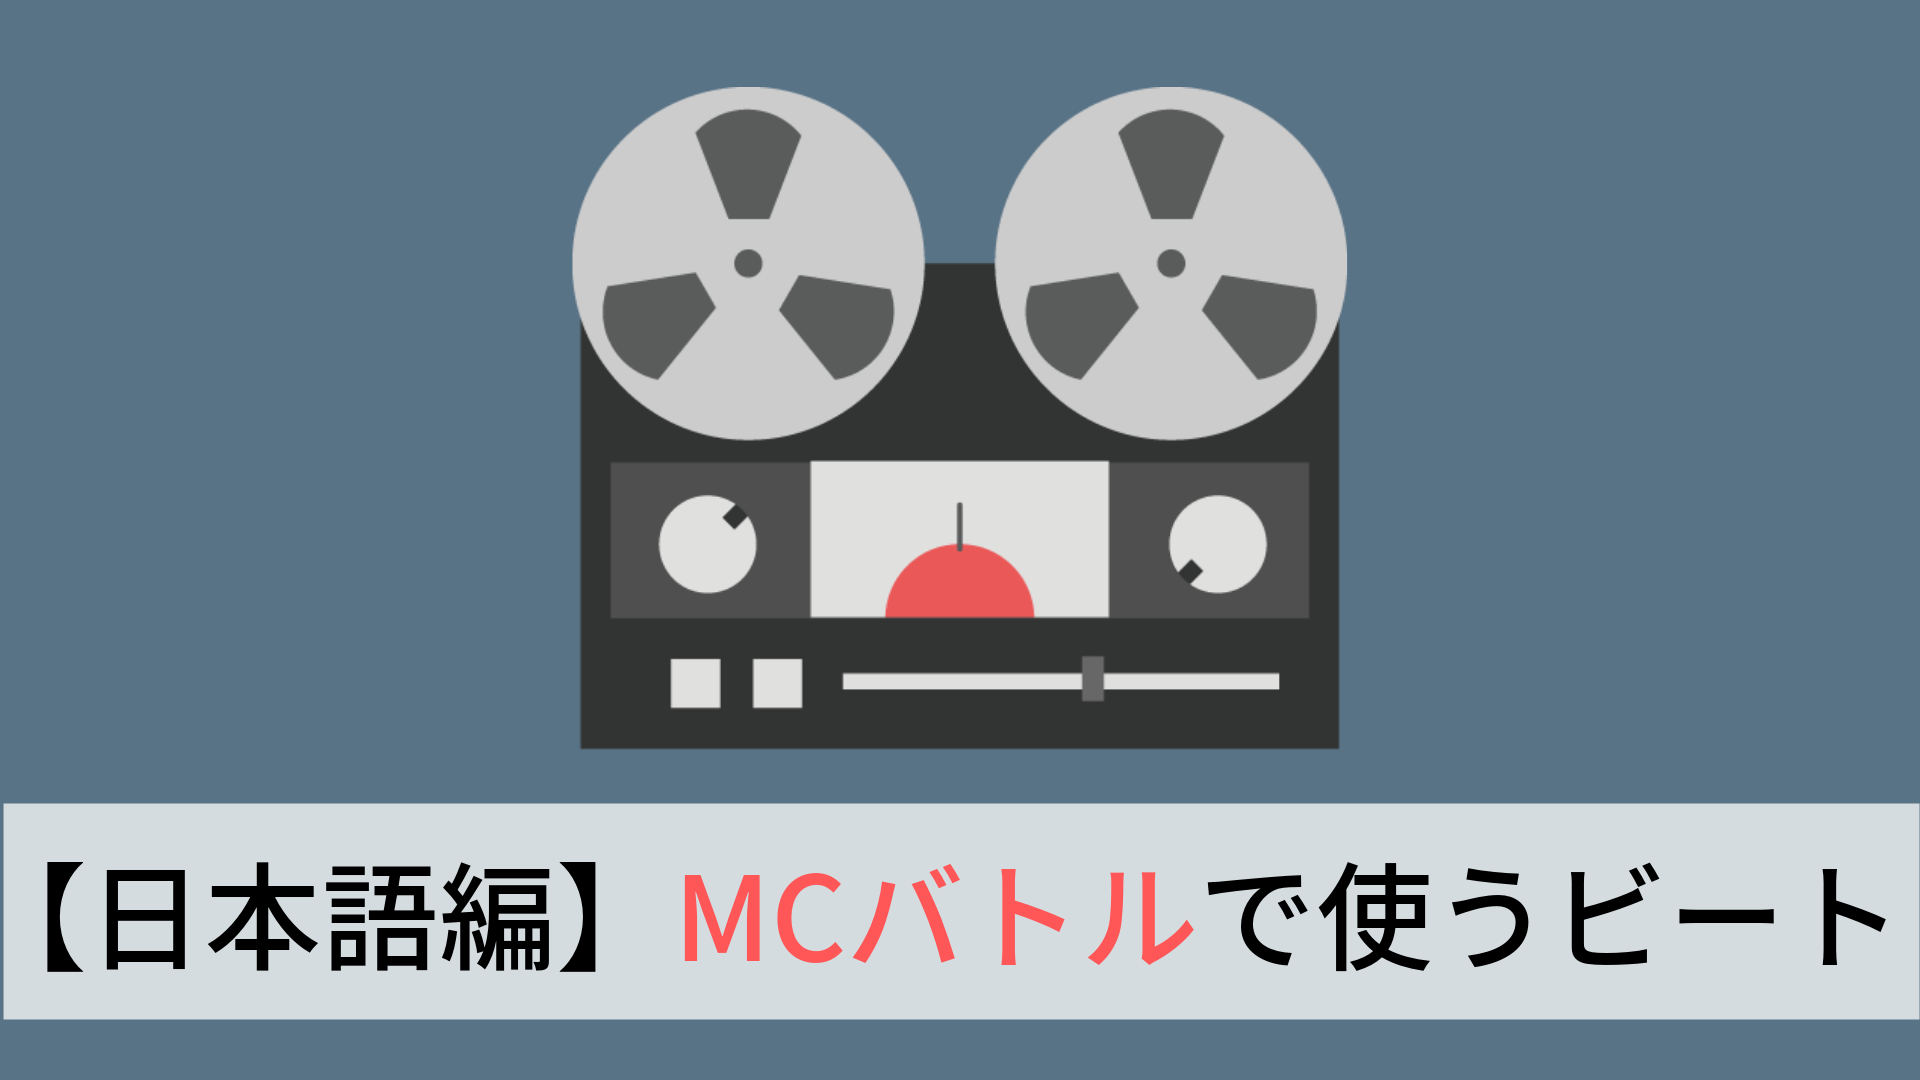 これだけ知っとけ Mcバトルでよく使われる有名ビート15選 日本語編 Hiphop部